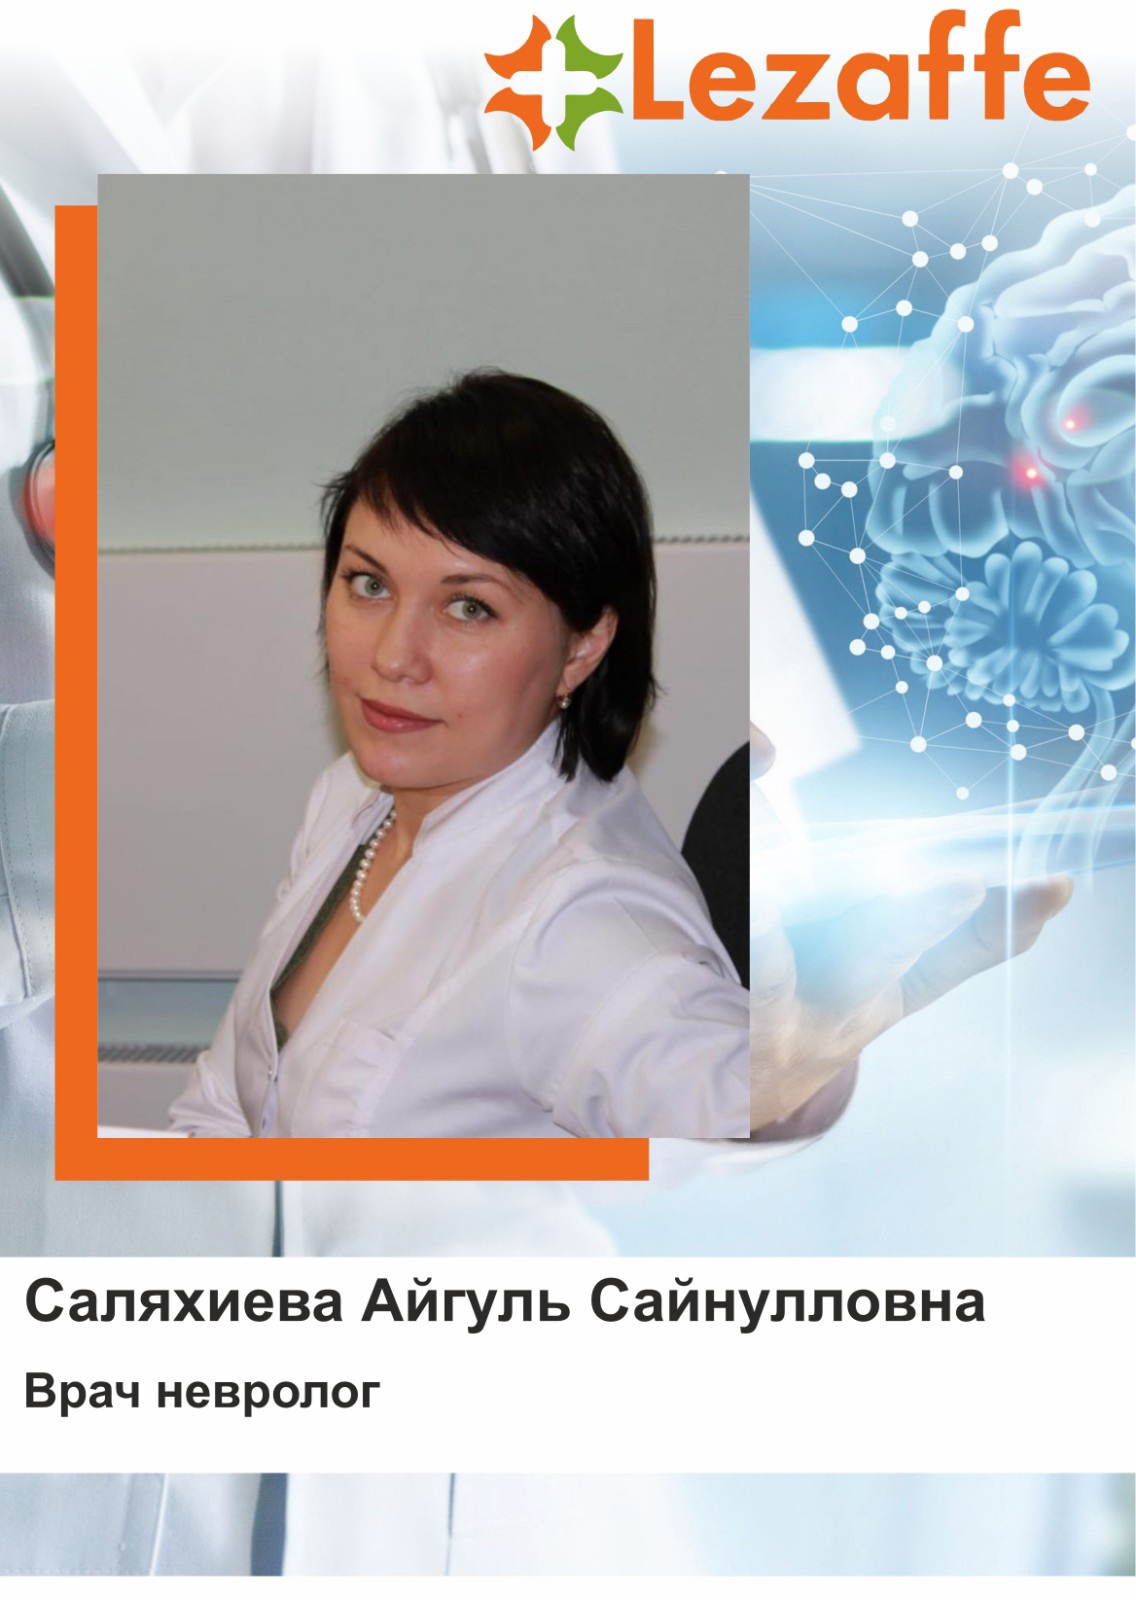 Саляхиева Айгуль Сайнулловна - врач невролог в клинике Lezaffe г. Нягань